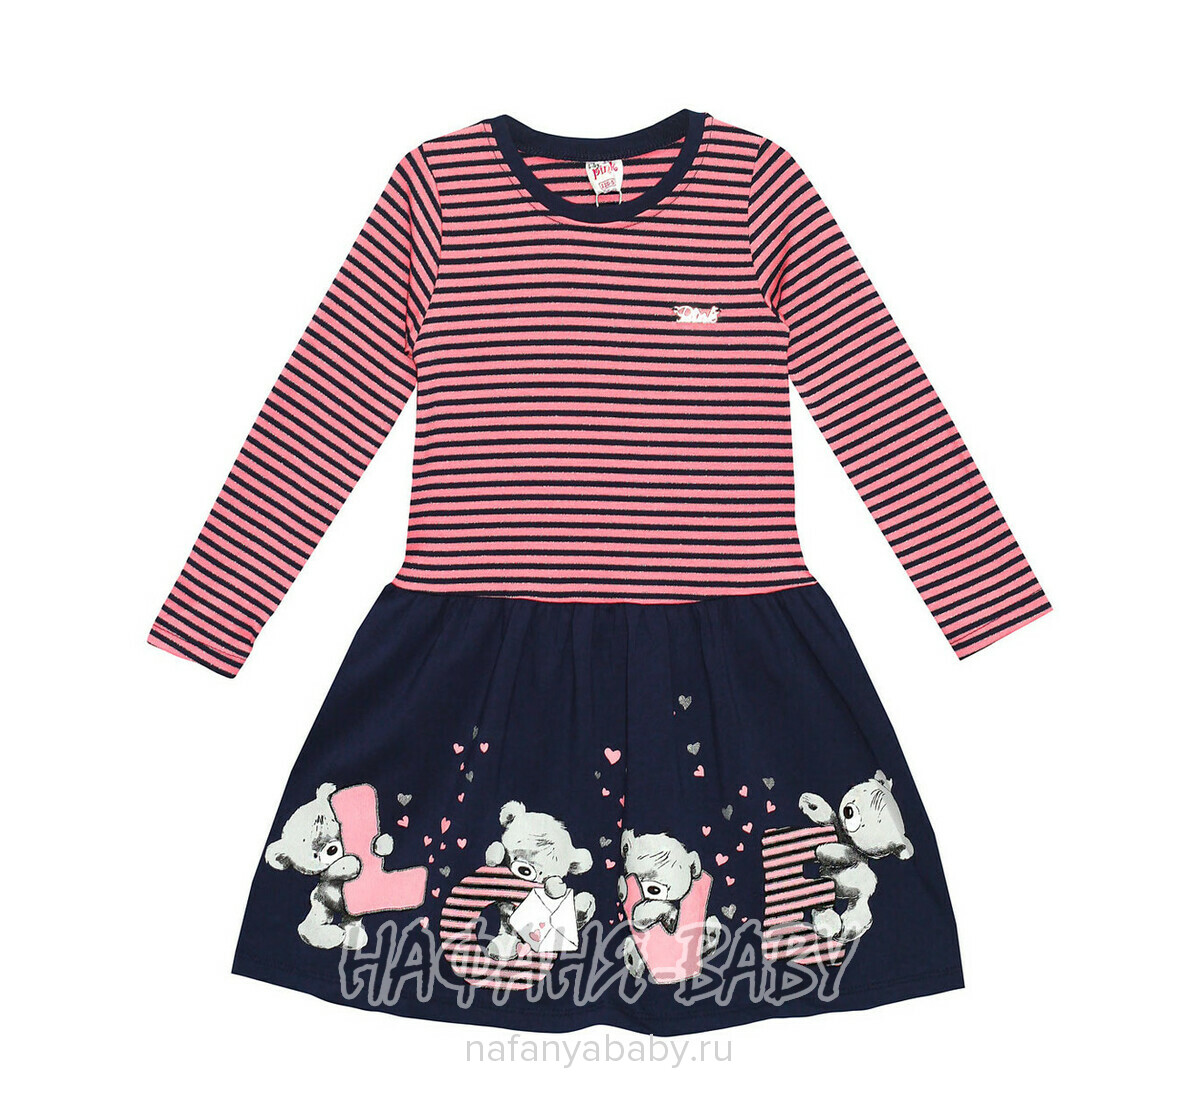 Детское трикотажное платье PINK, купить в интернет магазине Нафаня. арт: 4329.